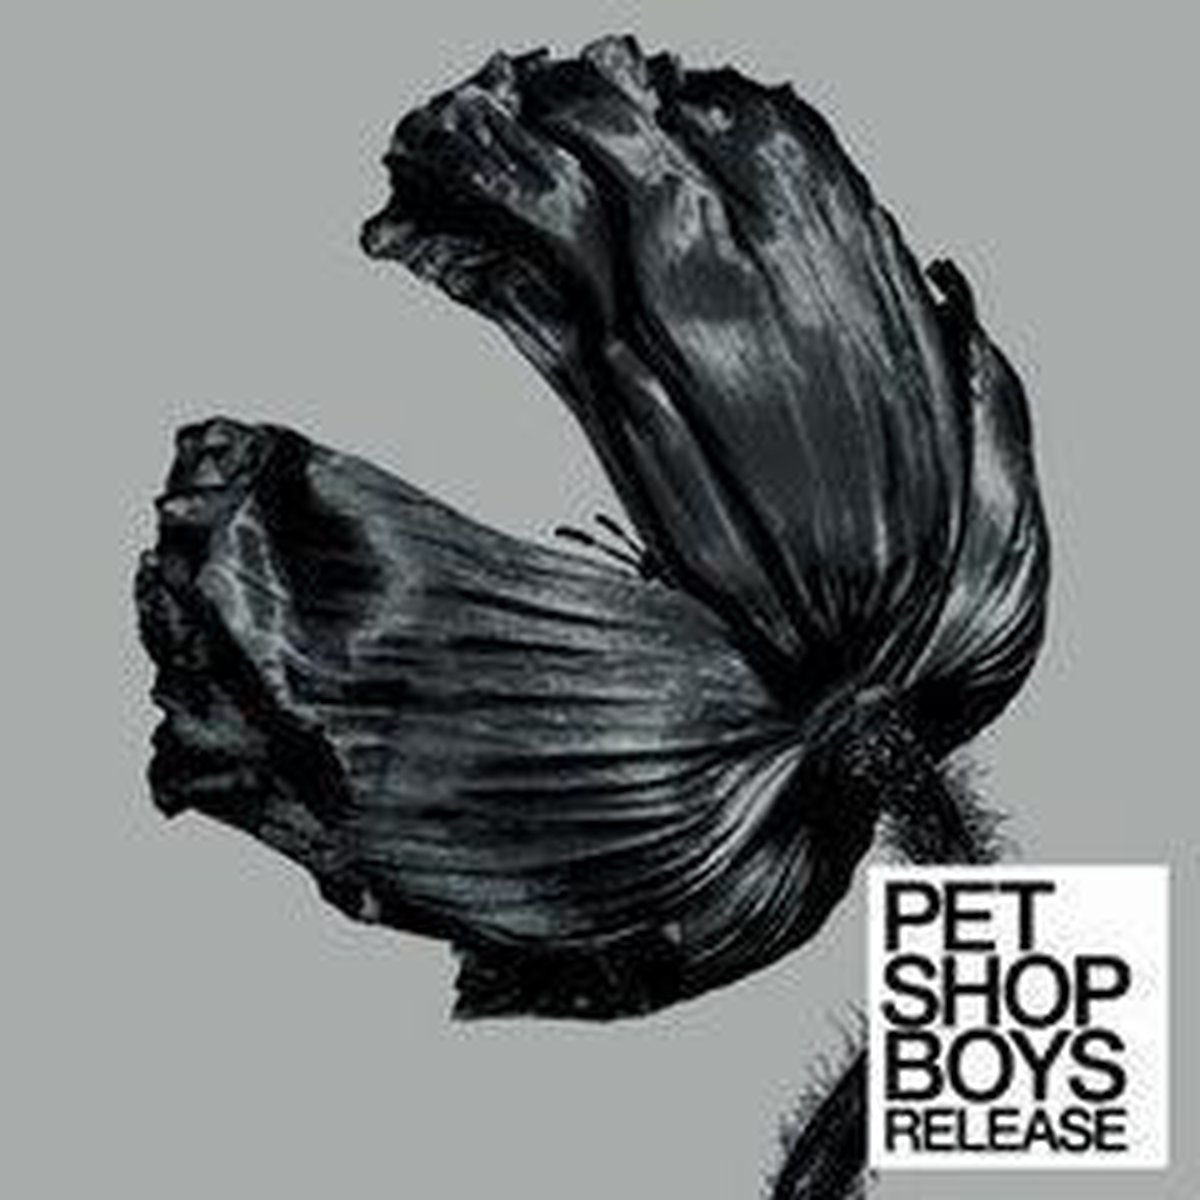 Release - Pet Shop Boys